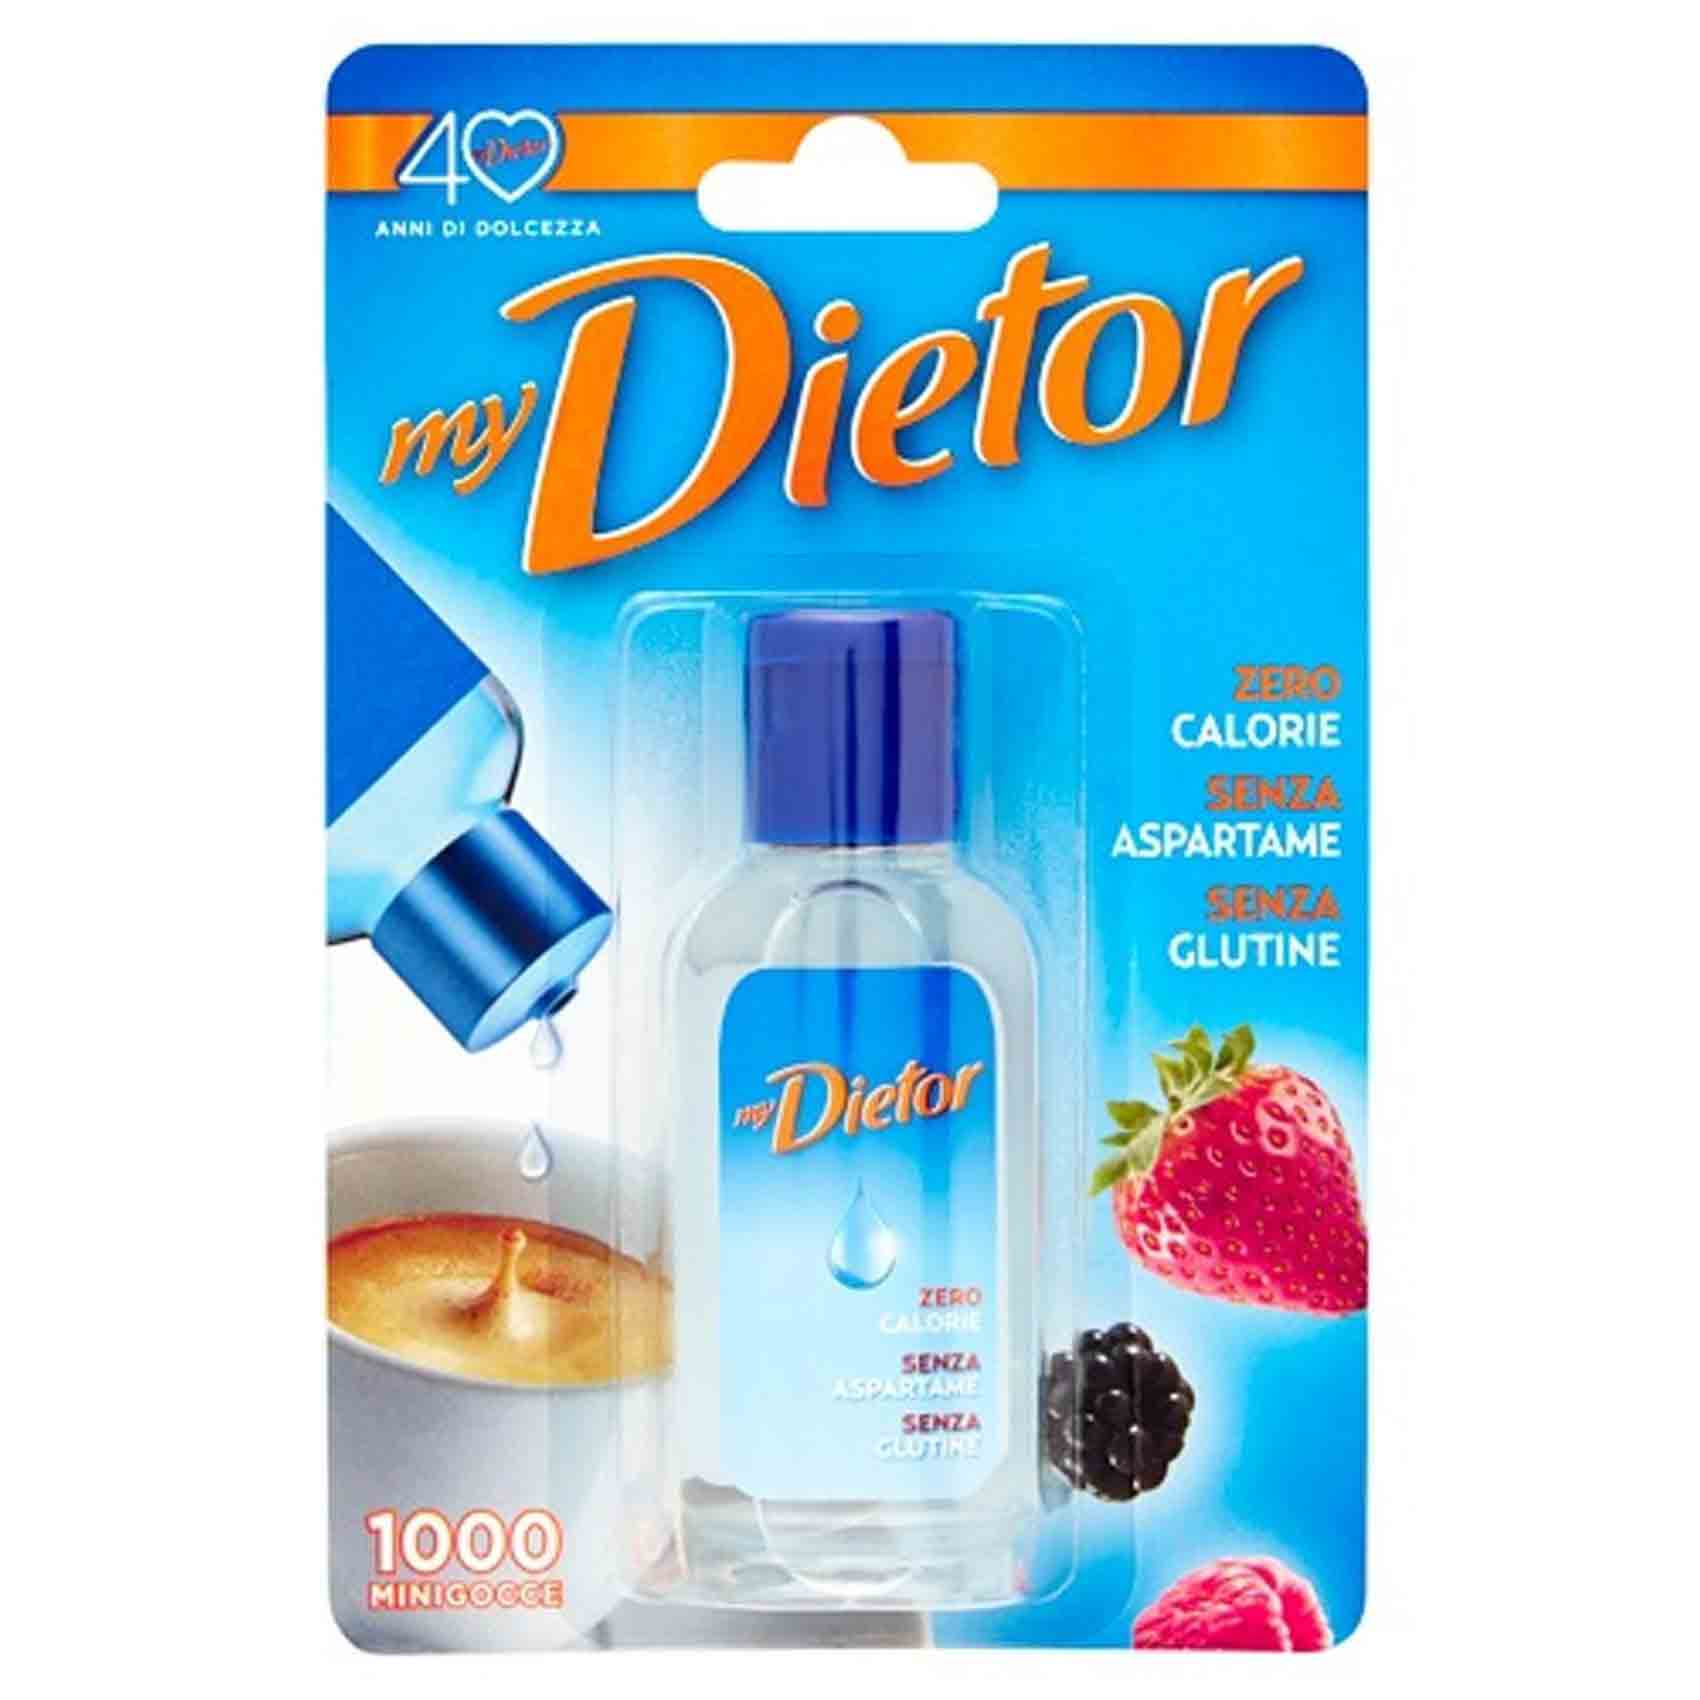 Sperlari Sweetener My Dietor Liquid 1000 Minigocce 50 Ml Blister